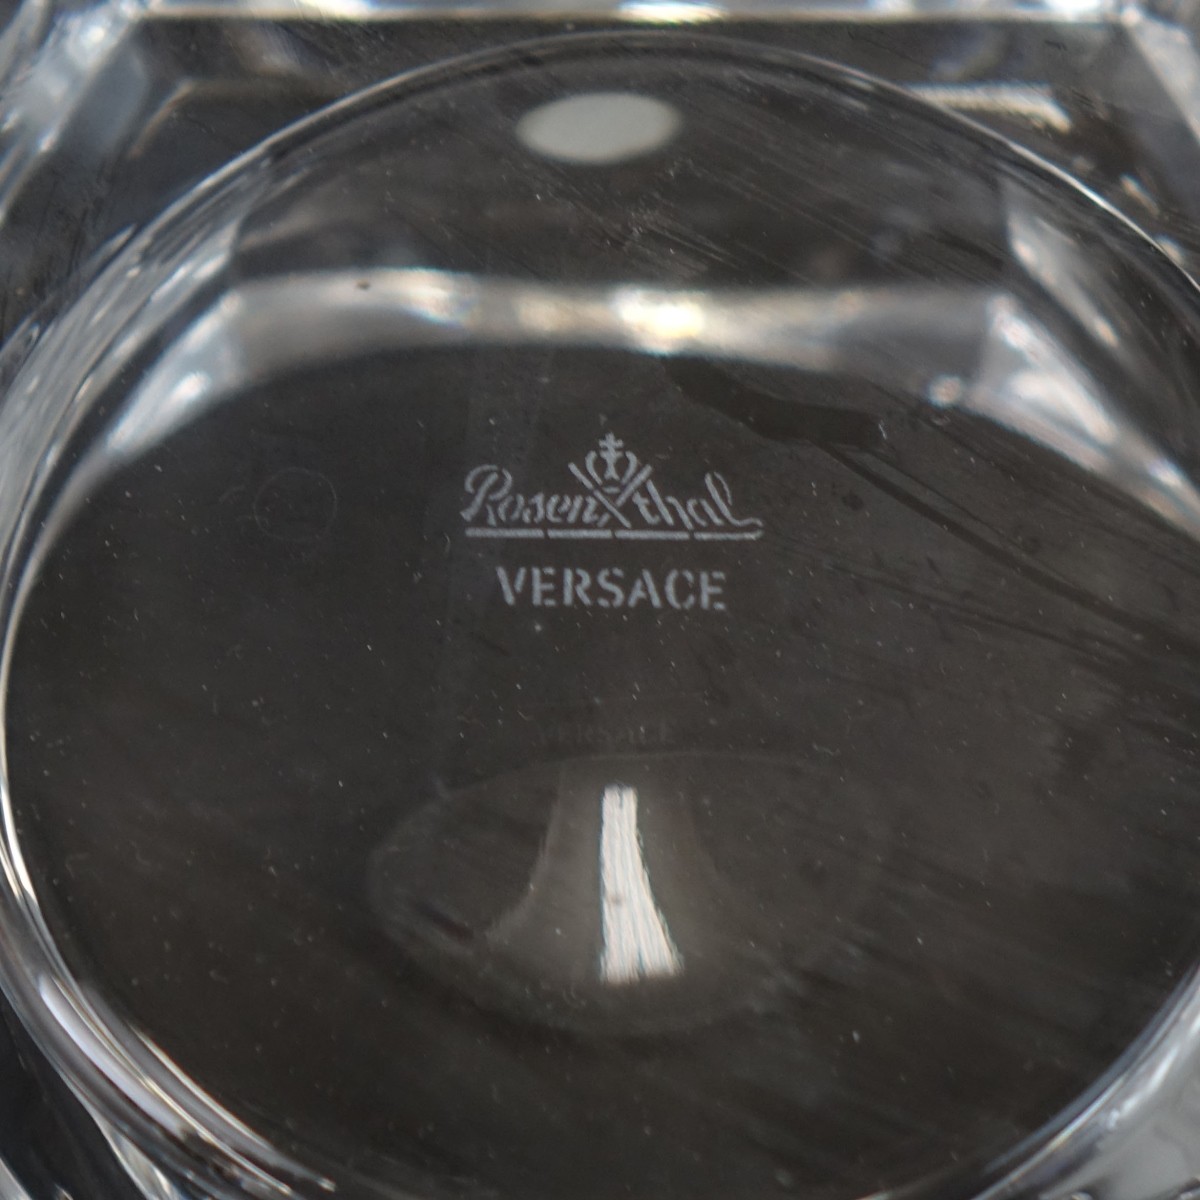 Rosenthal Versace Tableware